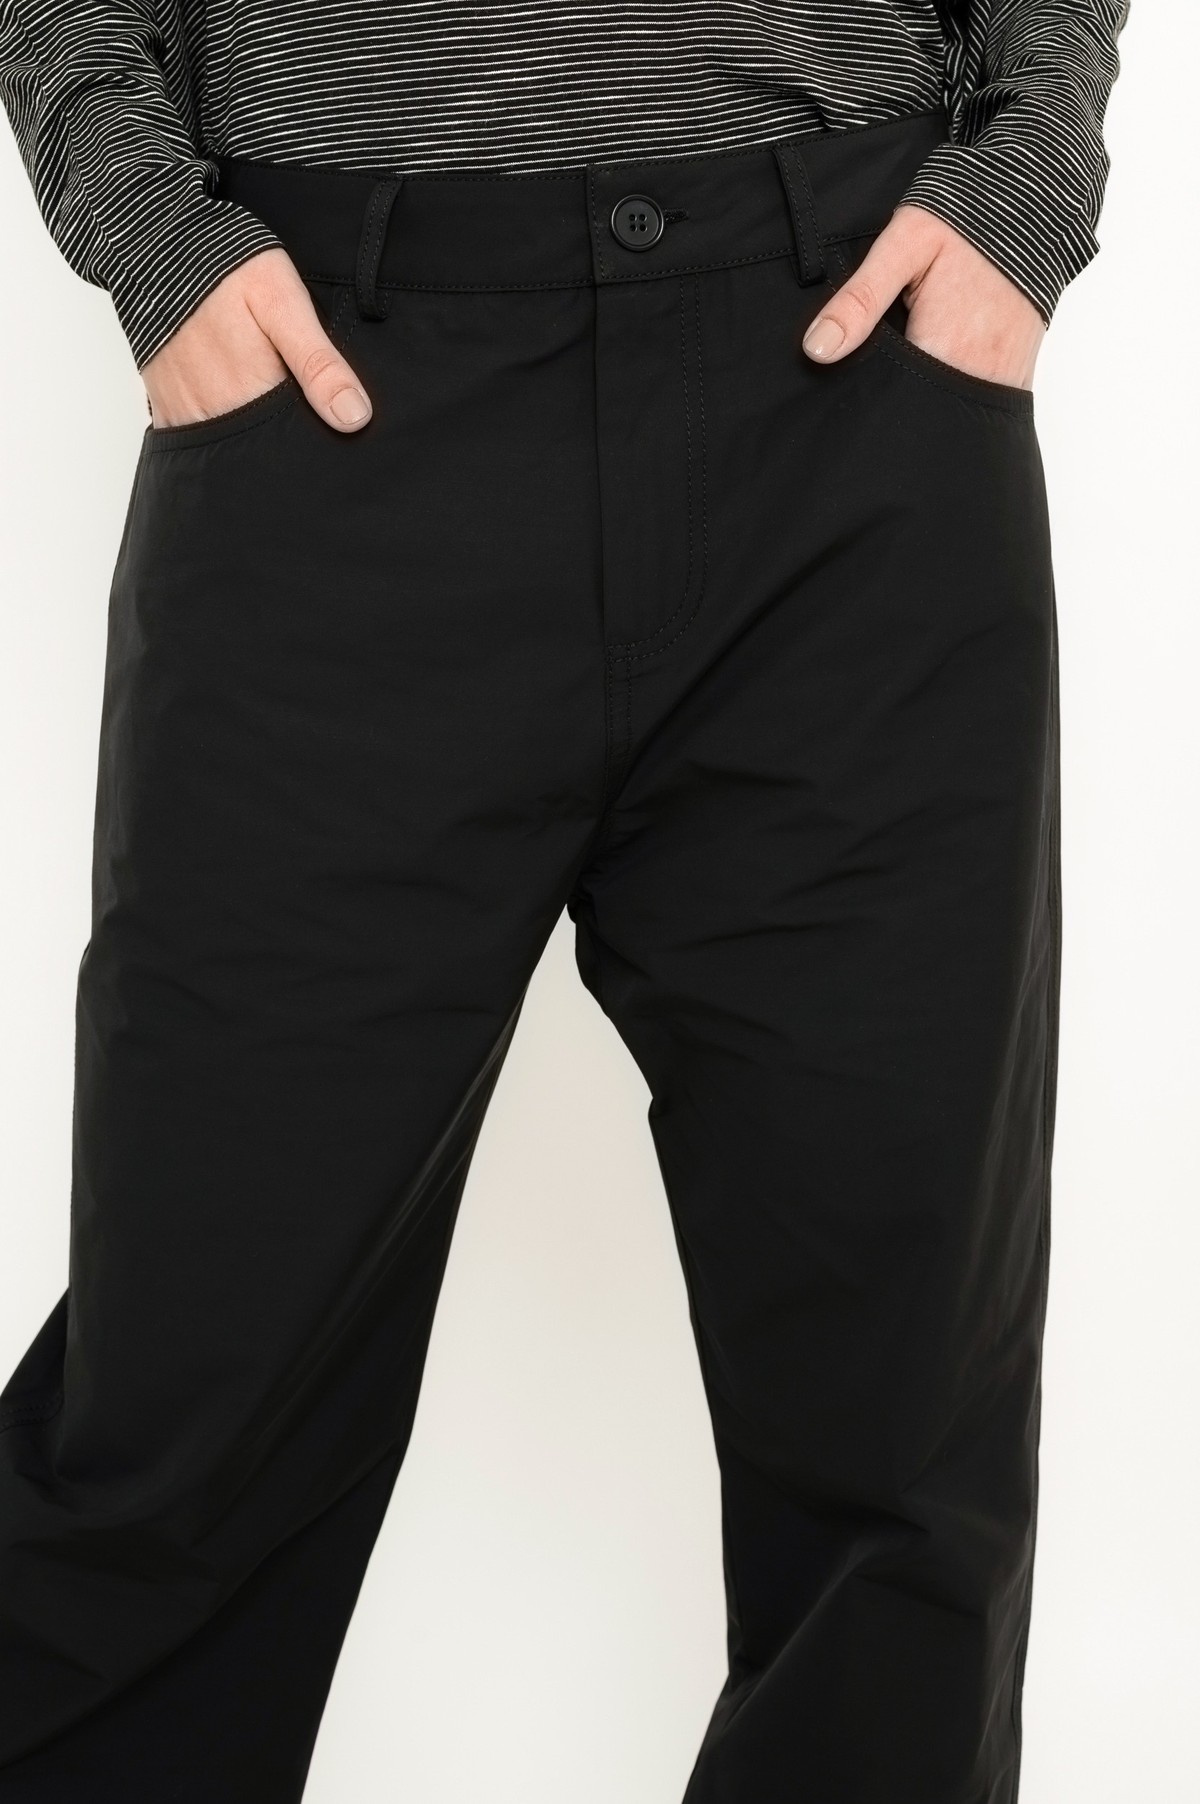 calça five pockets em tecido tecnológico | tech fabric five-pocket pants